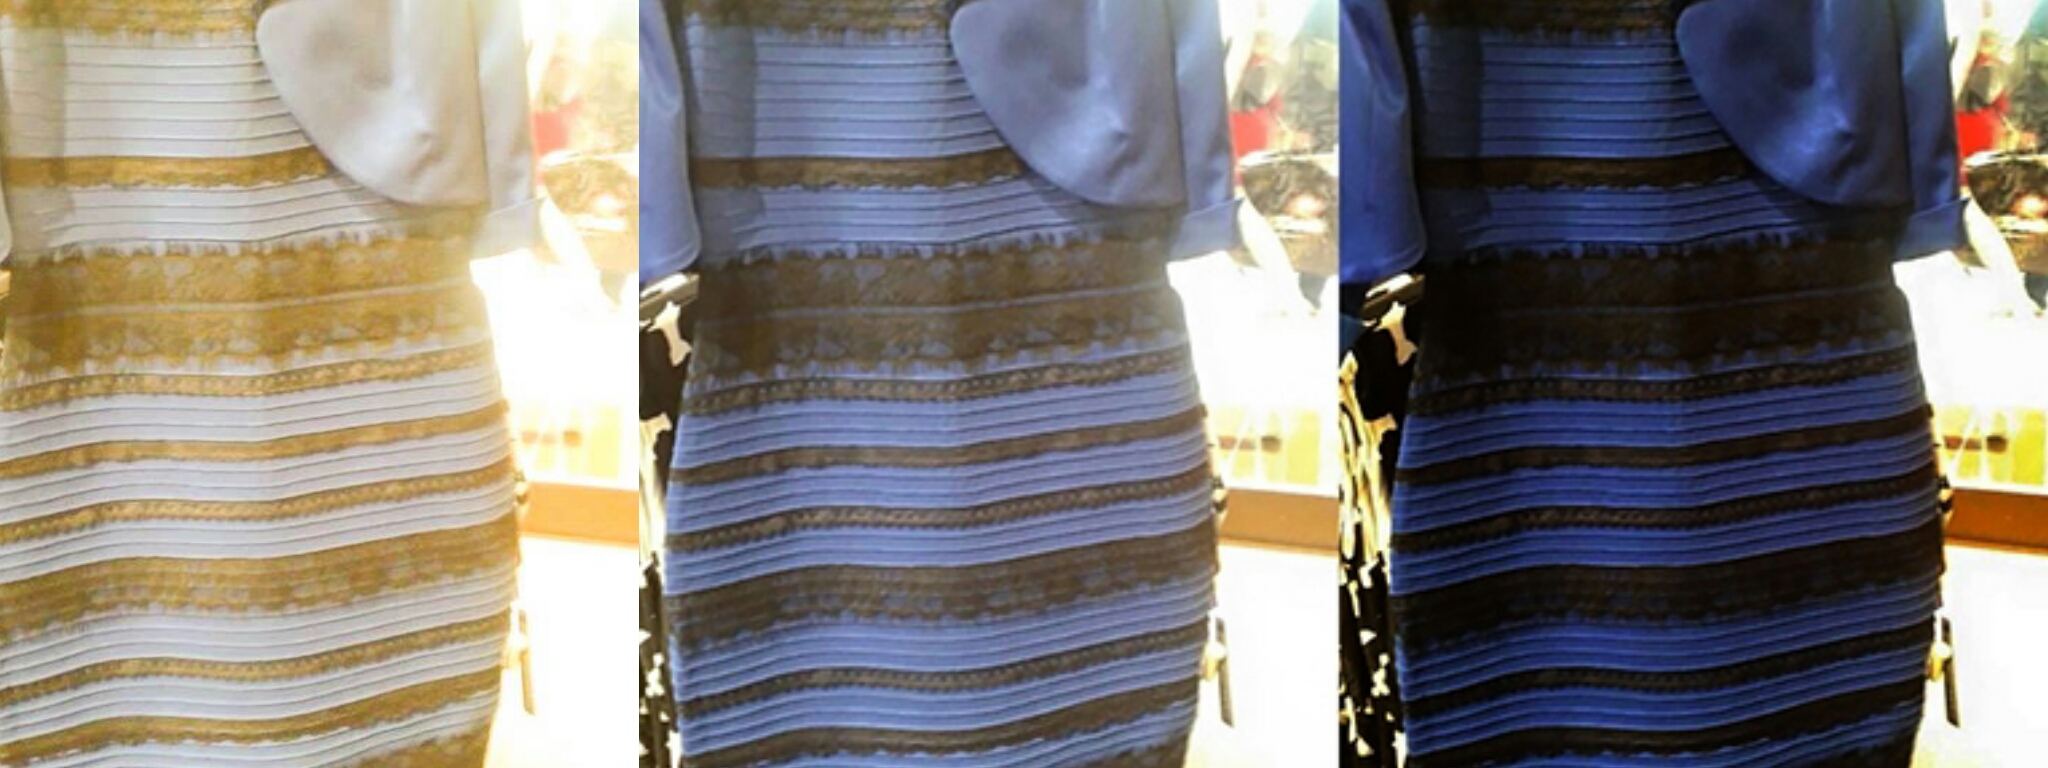 Пользователи в соцсетях не смогли определить цвет платья-хамелеона